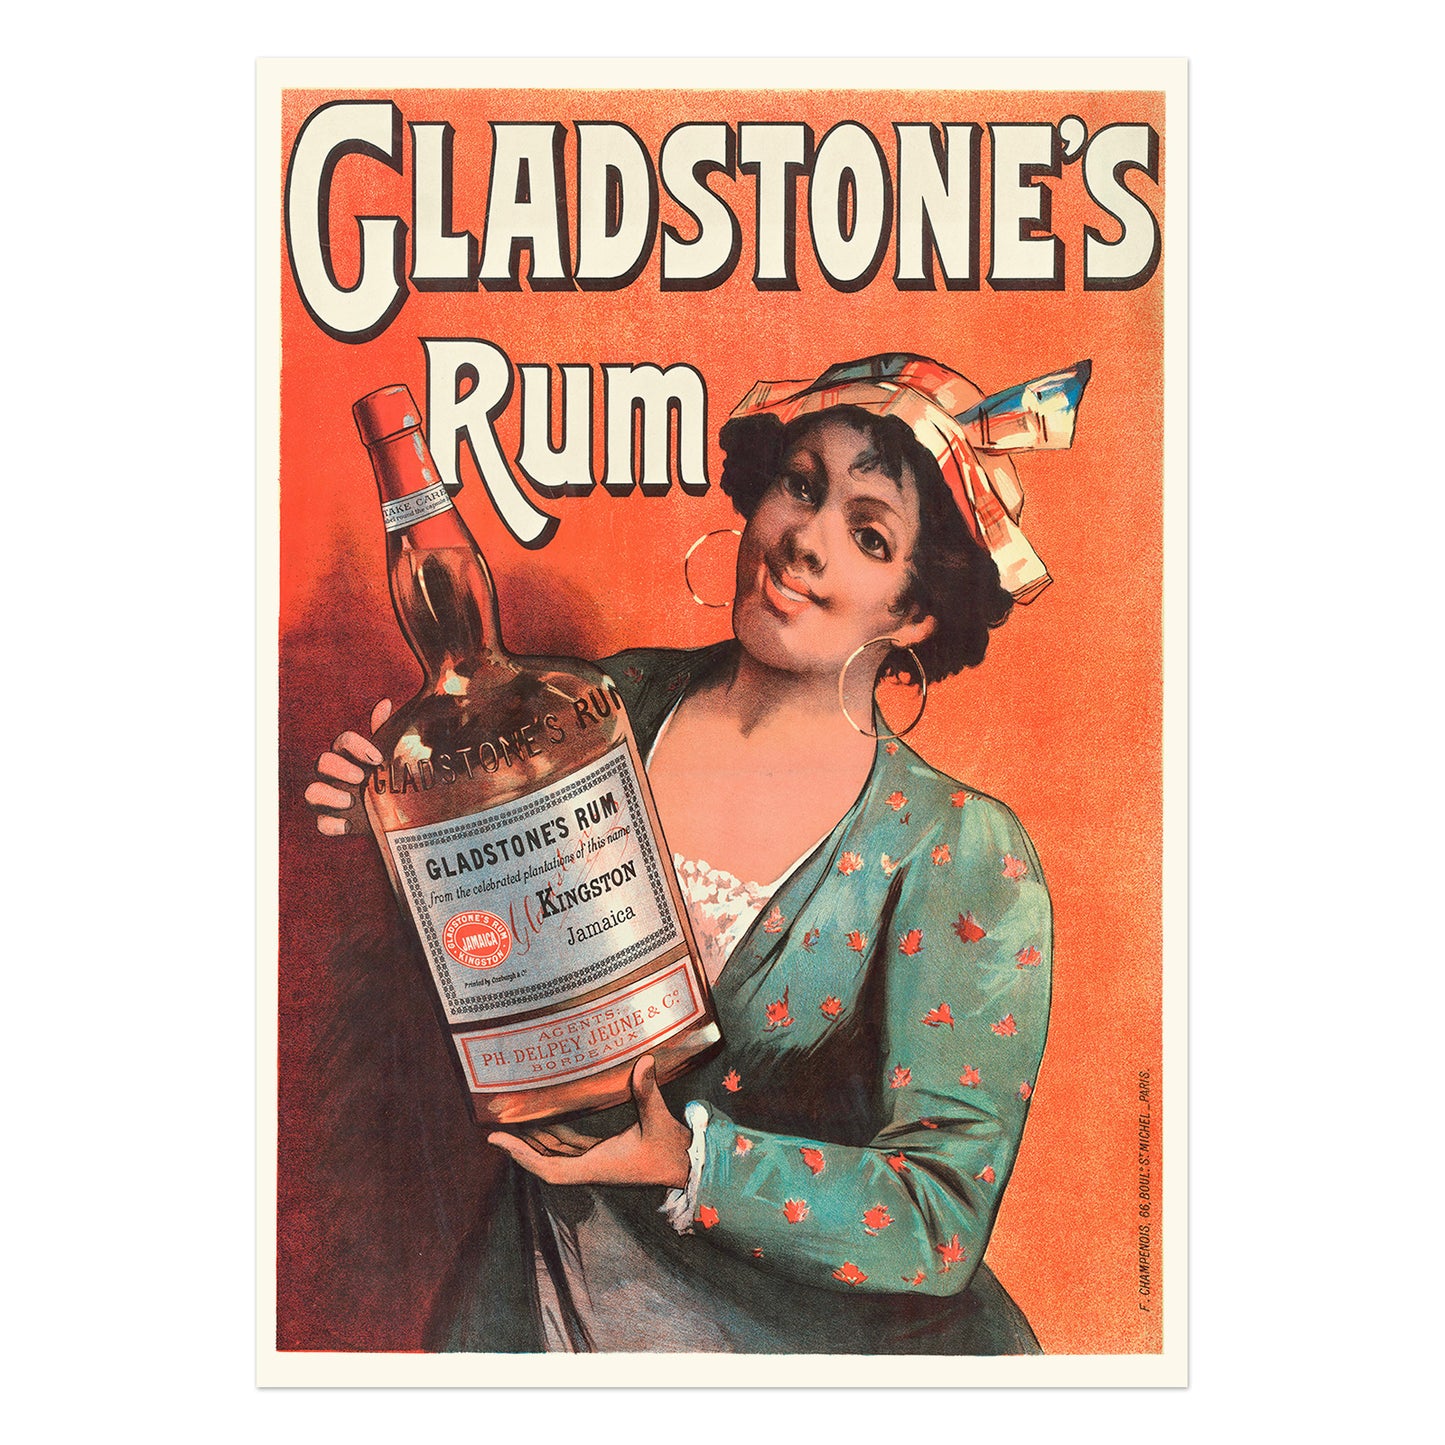 Gladstones Rum